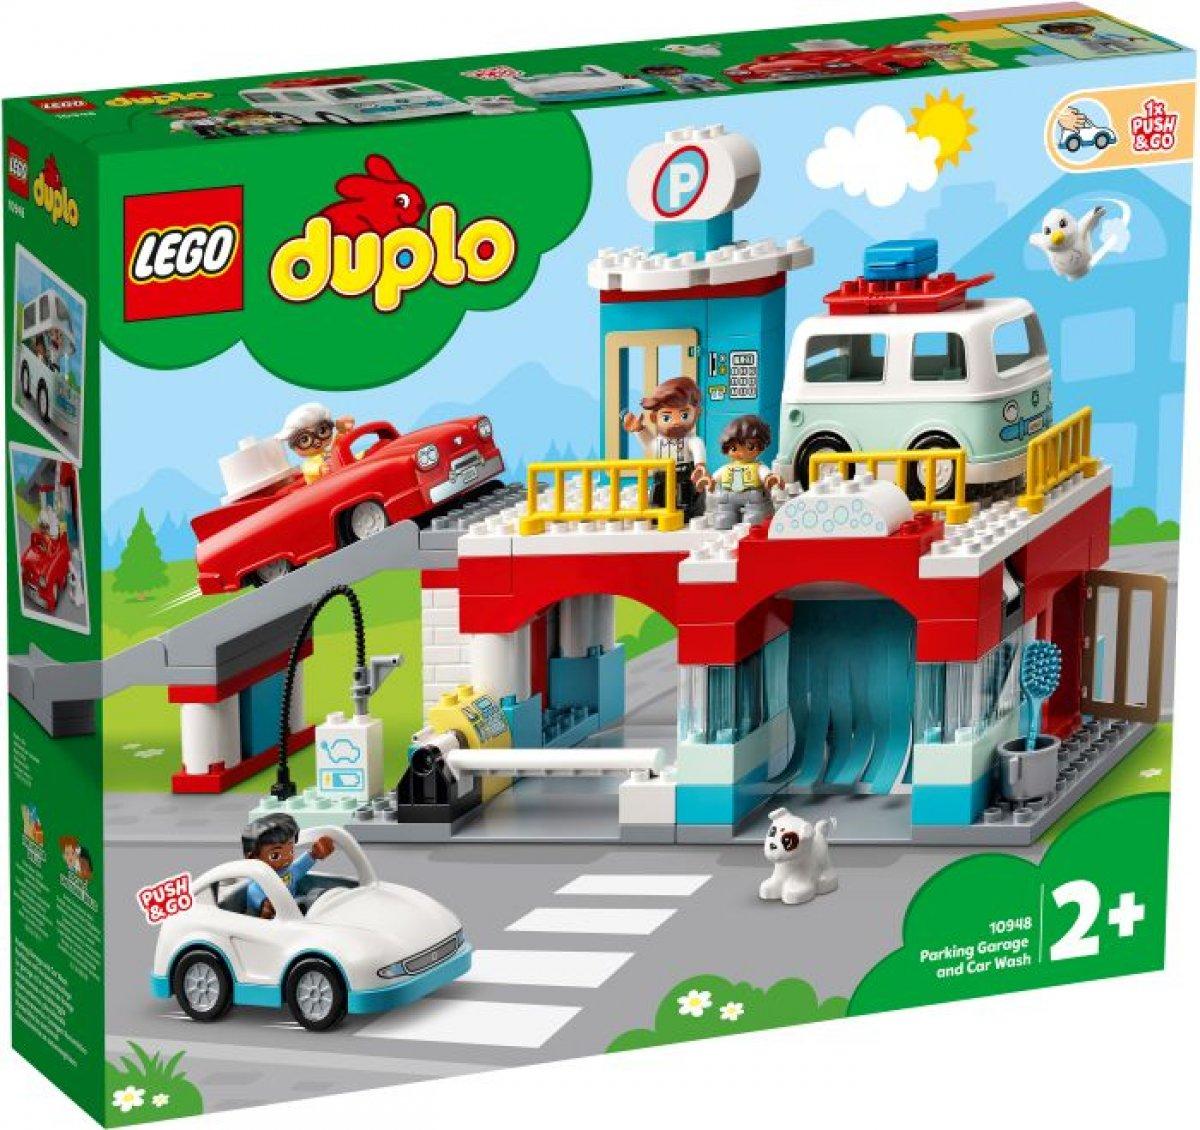 LEGO DUPLO Parkhaus mit Autowaschanlage